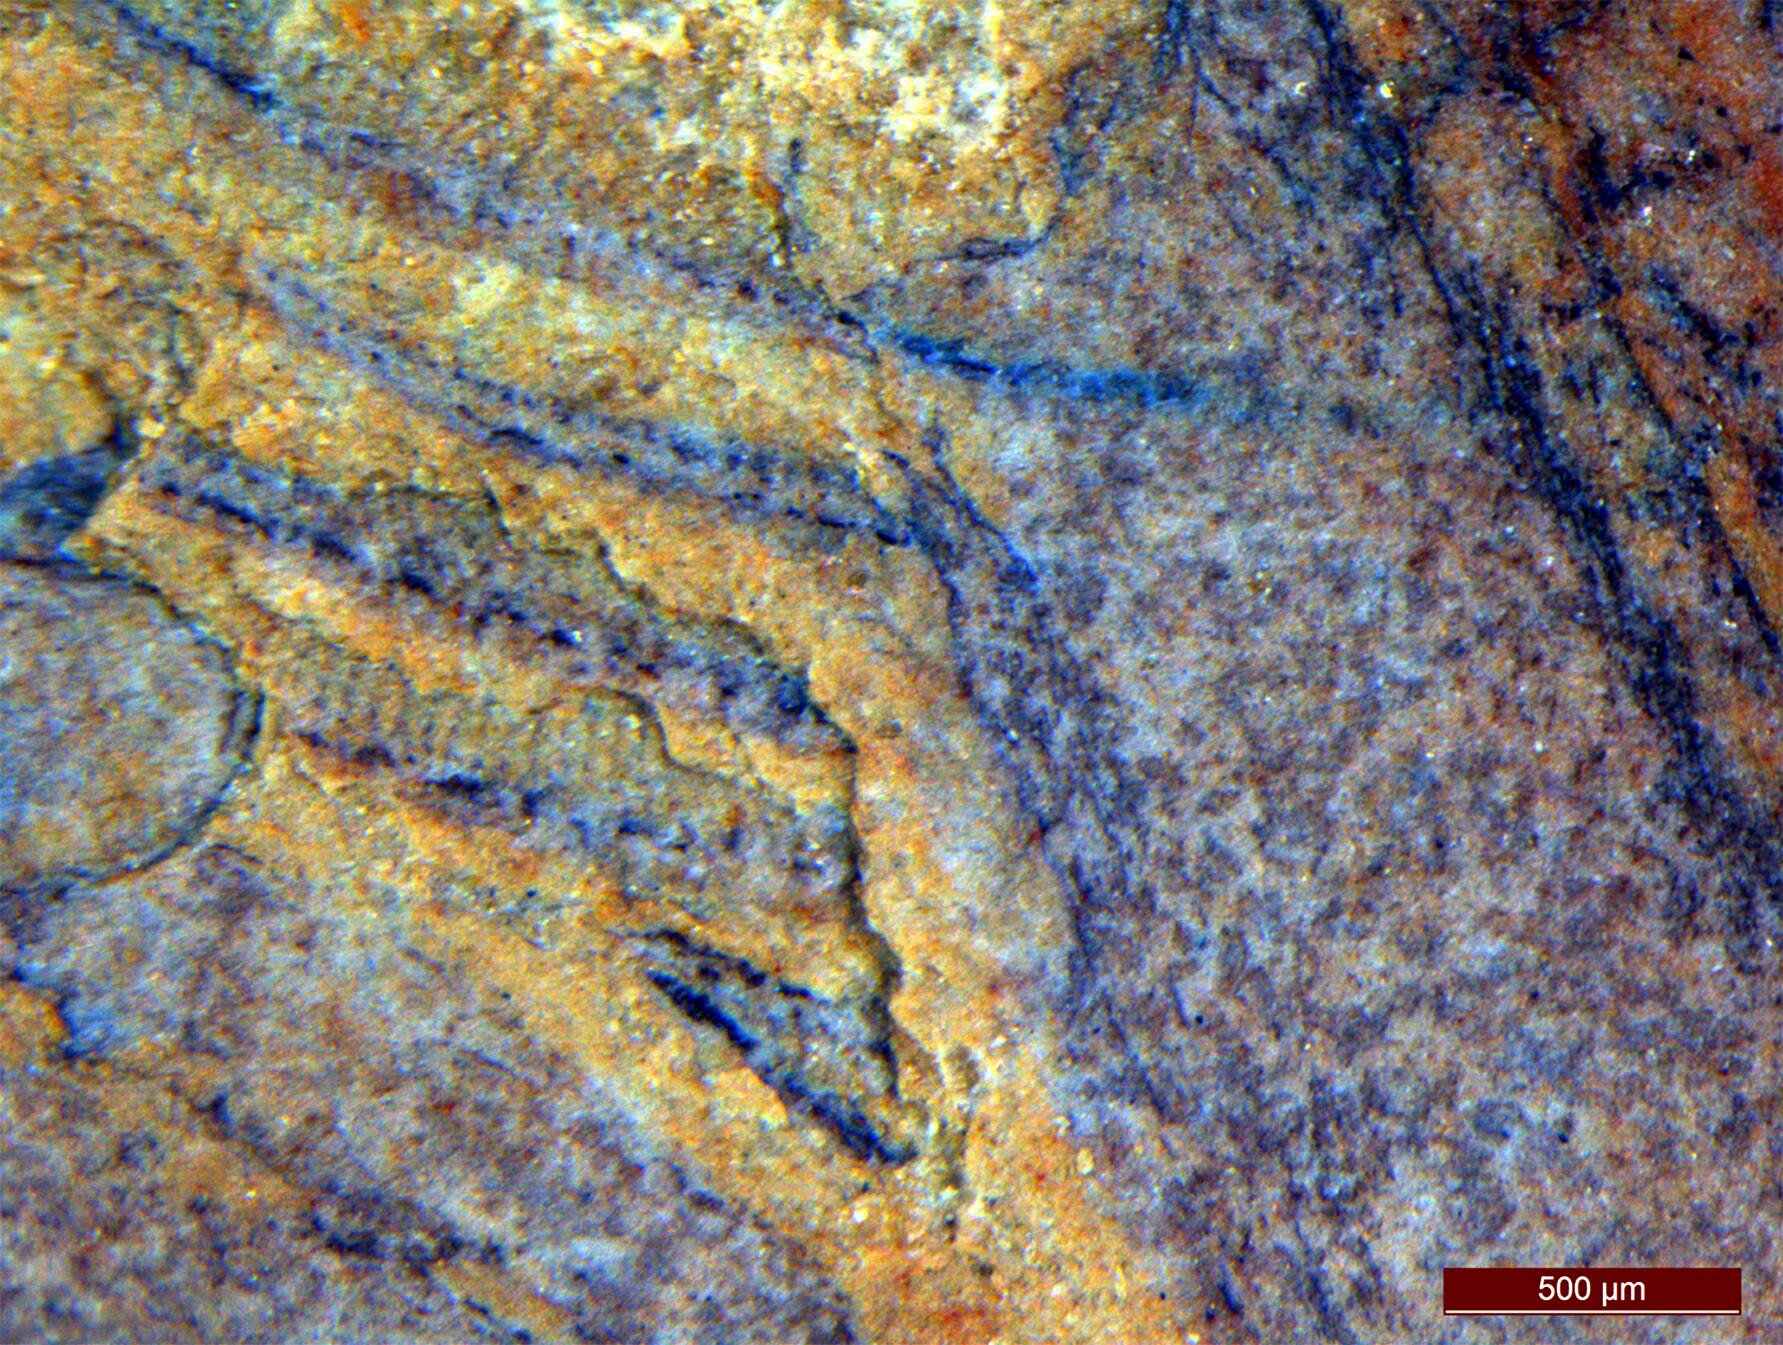 Eng Zoumaache vun de Reihen vu Cilia op Daihua, wat den Auteuren gehollef huet d'Fossilien op der Kamm Jelly Stammlineage ze placéieren.